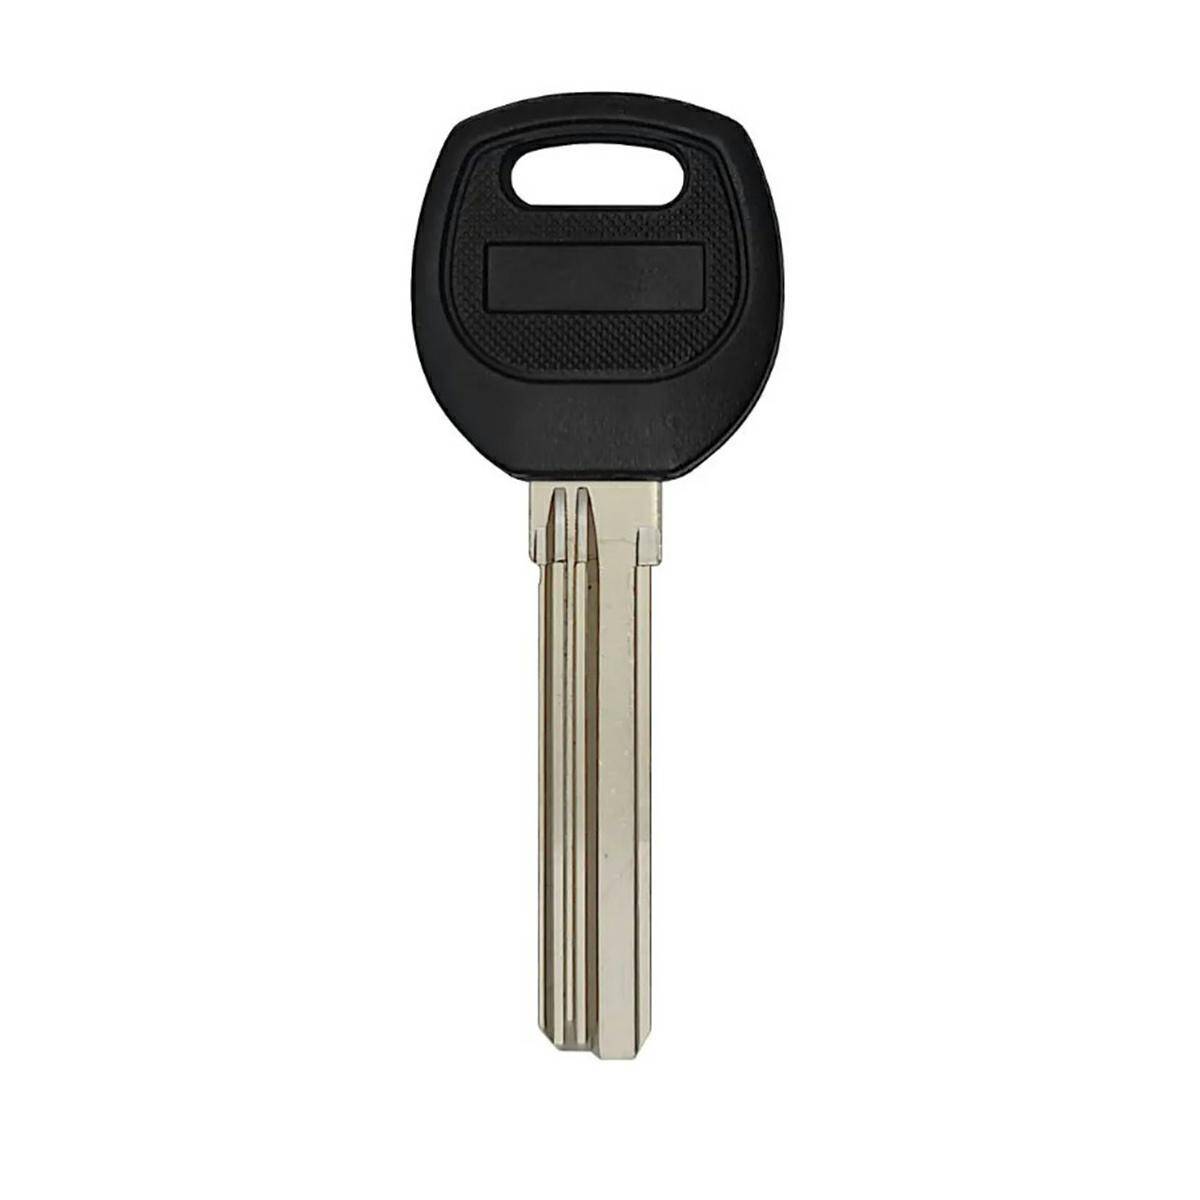 Chinese key 37mm x 8,8mm x 2,2mm